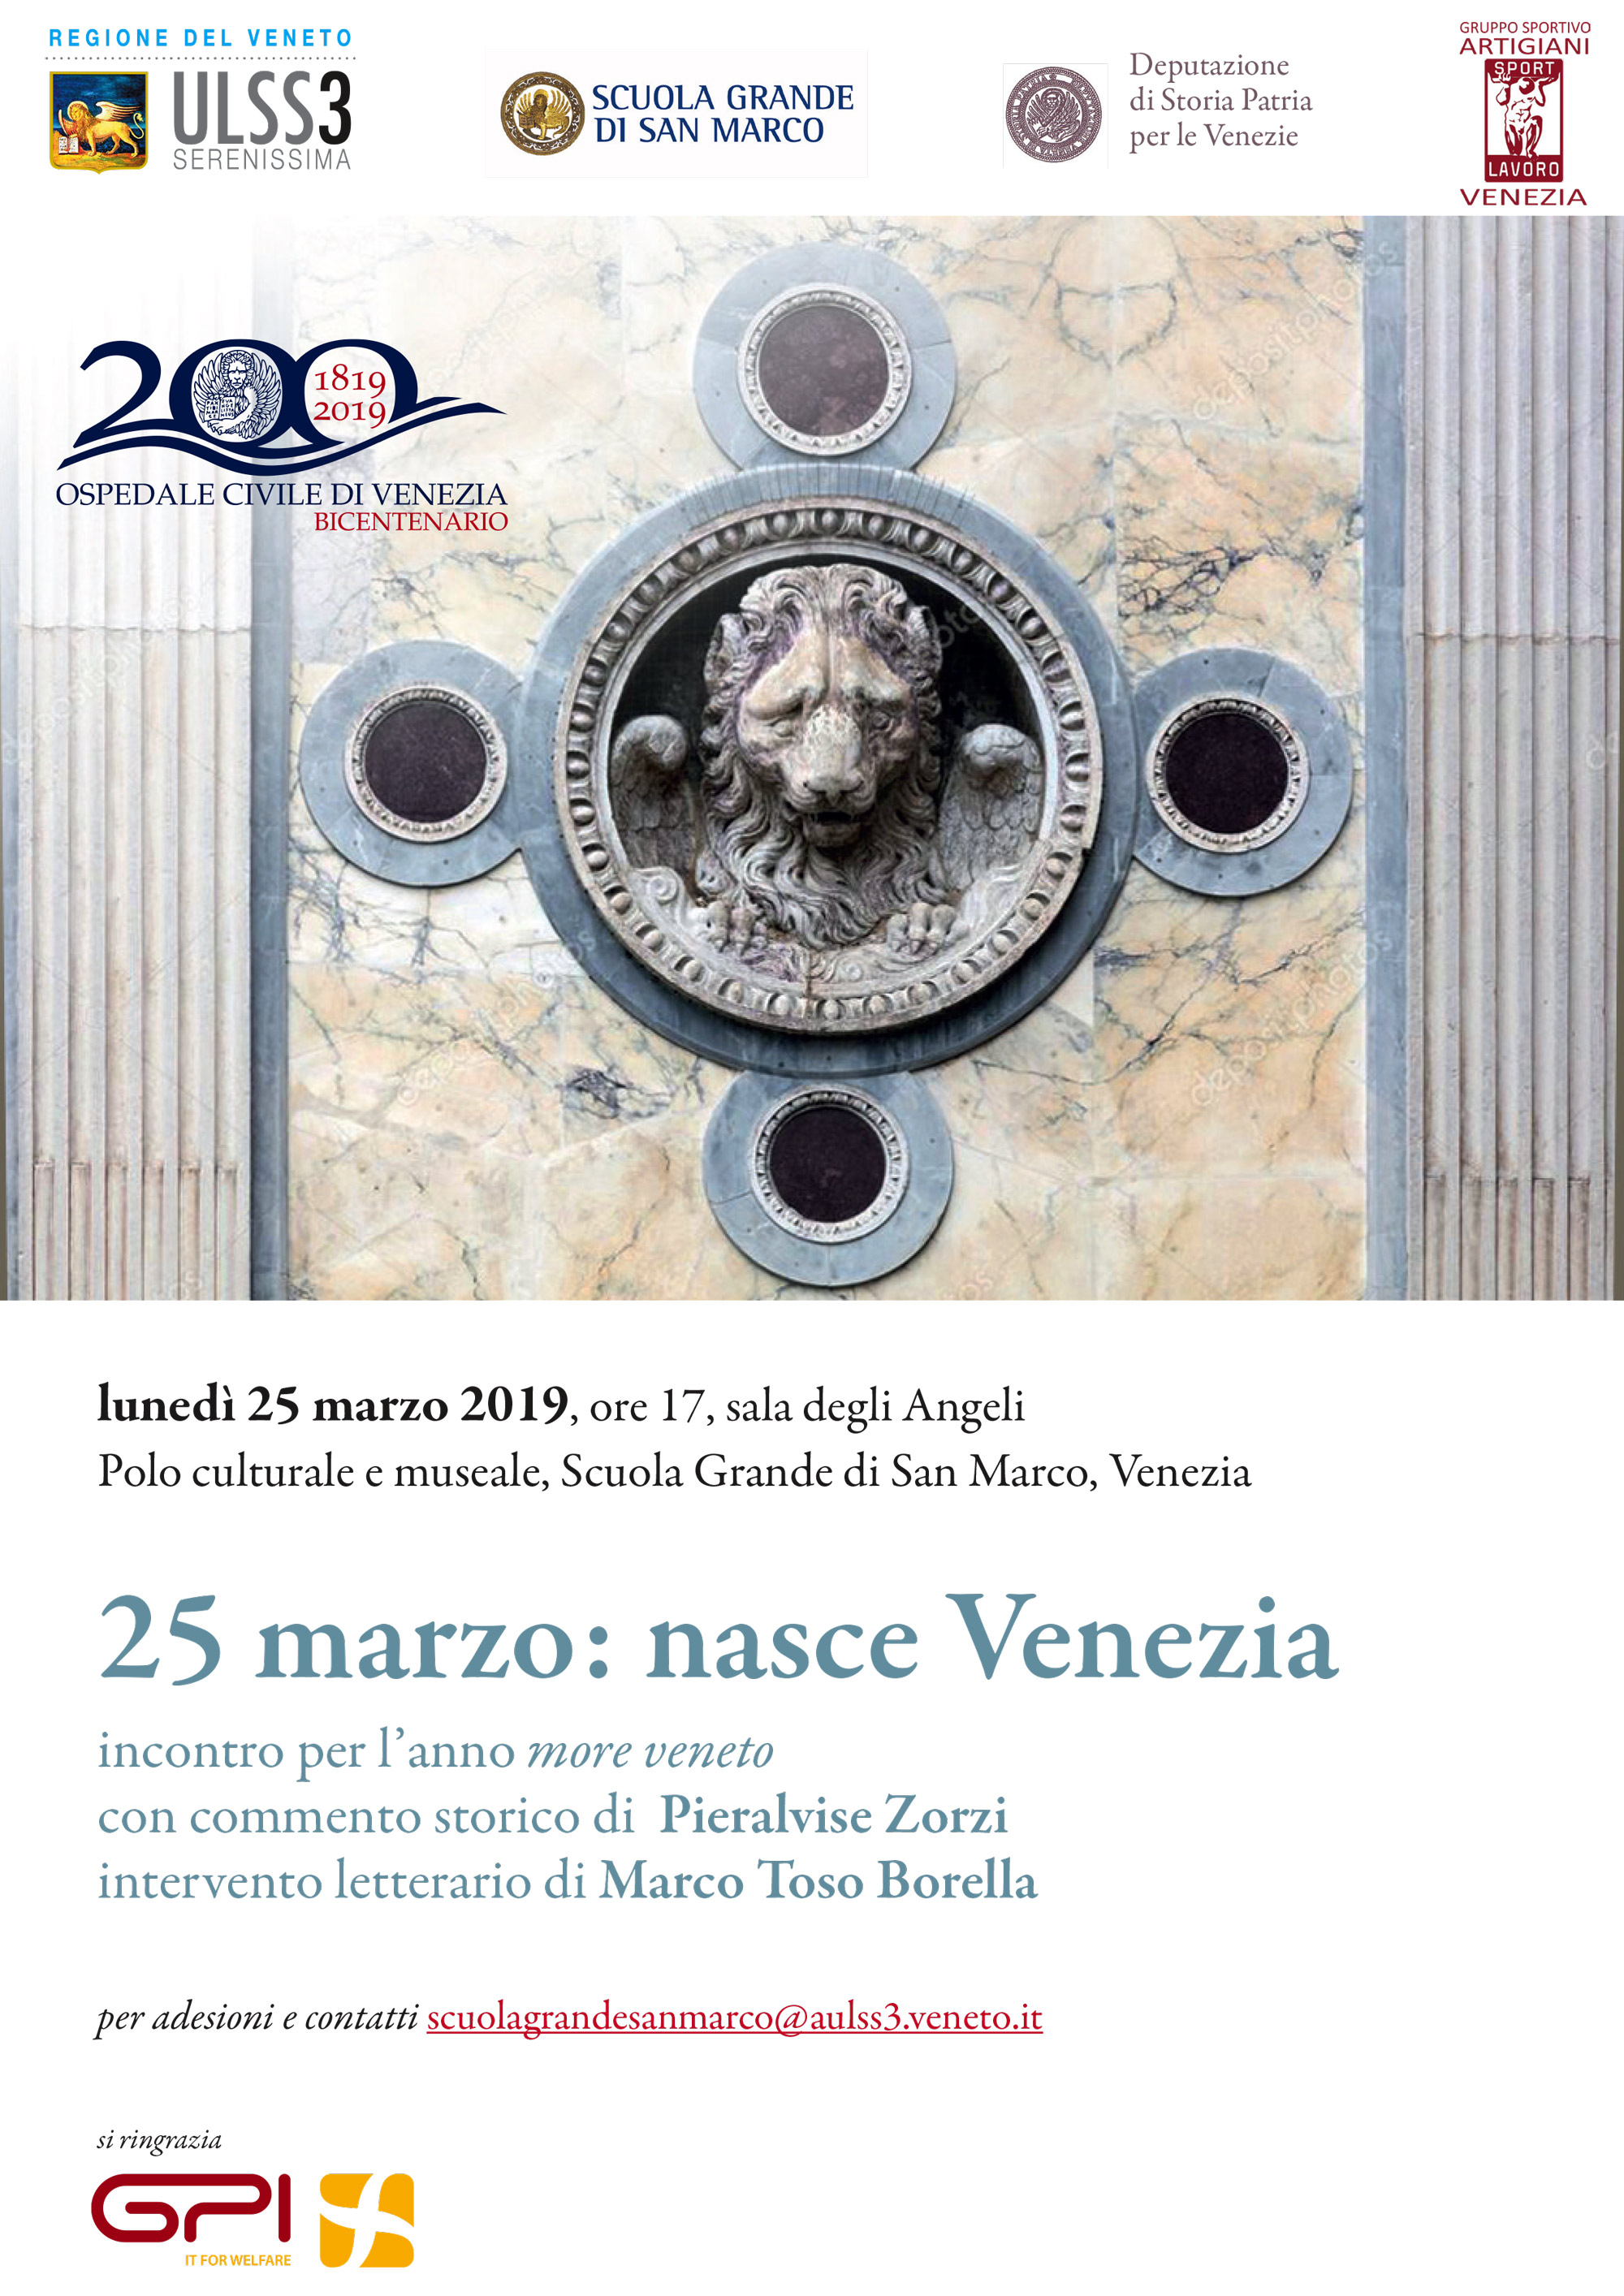 Evento per il Bicentenario dell'Ospedale Civile di Venezia